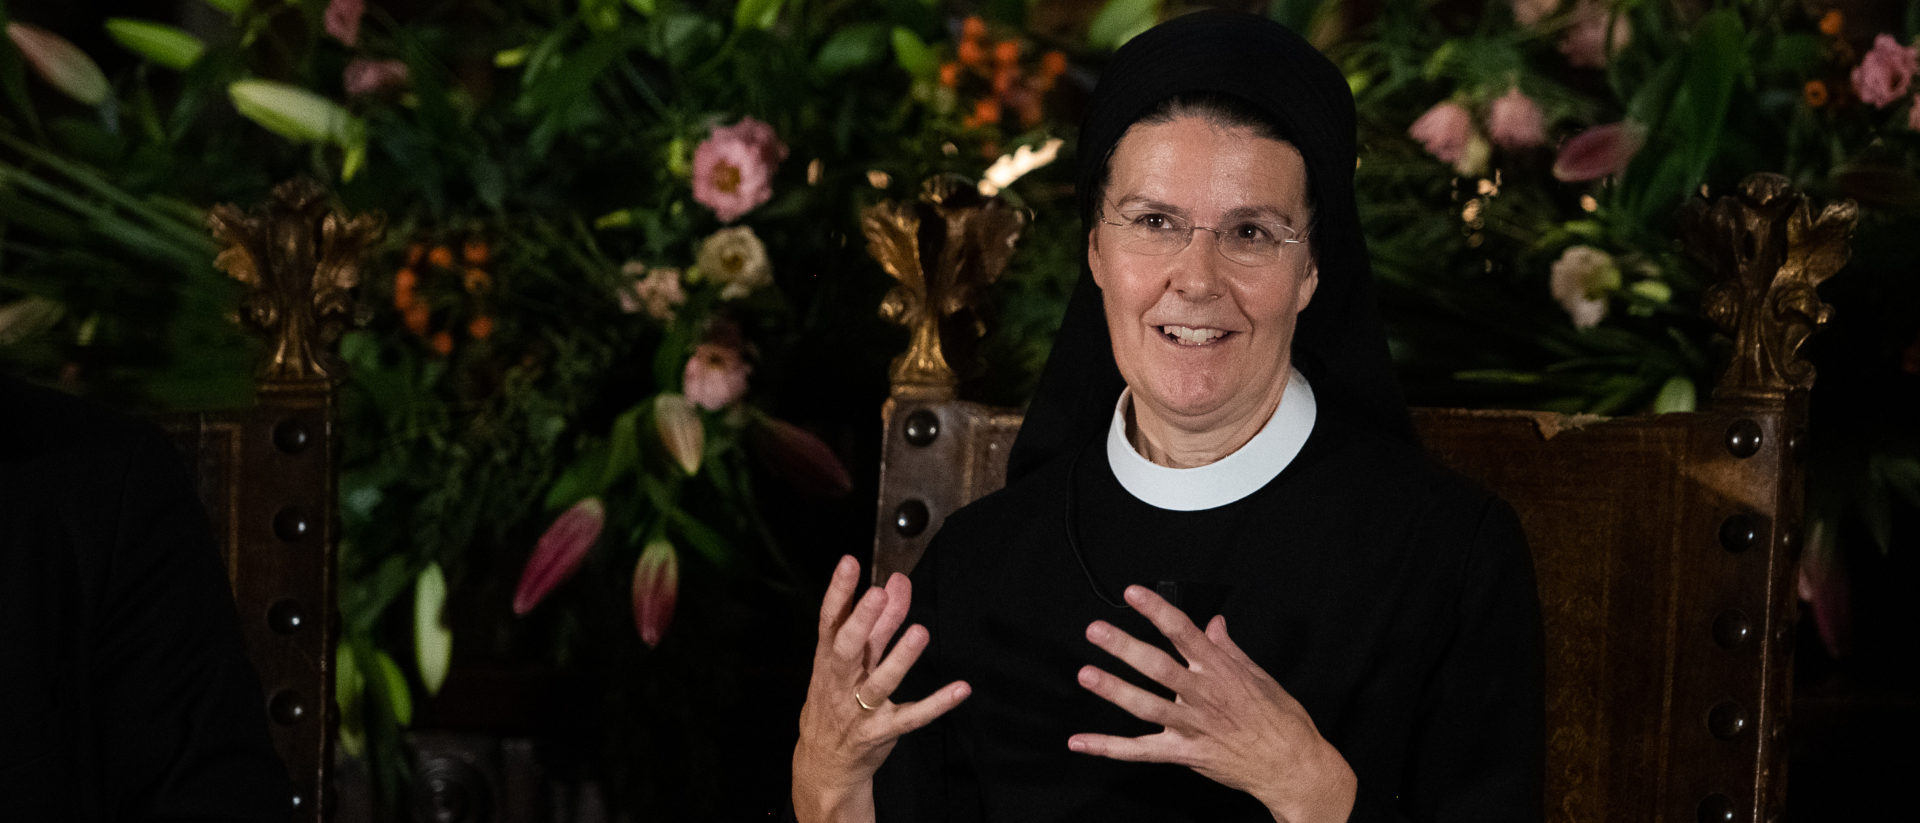 "Wenn niemand mehr Sakramente spenden kann, geht die Kirche unter", sagte Priorin Irene Gassmann auf dem Podium in Rom.